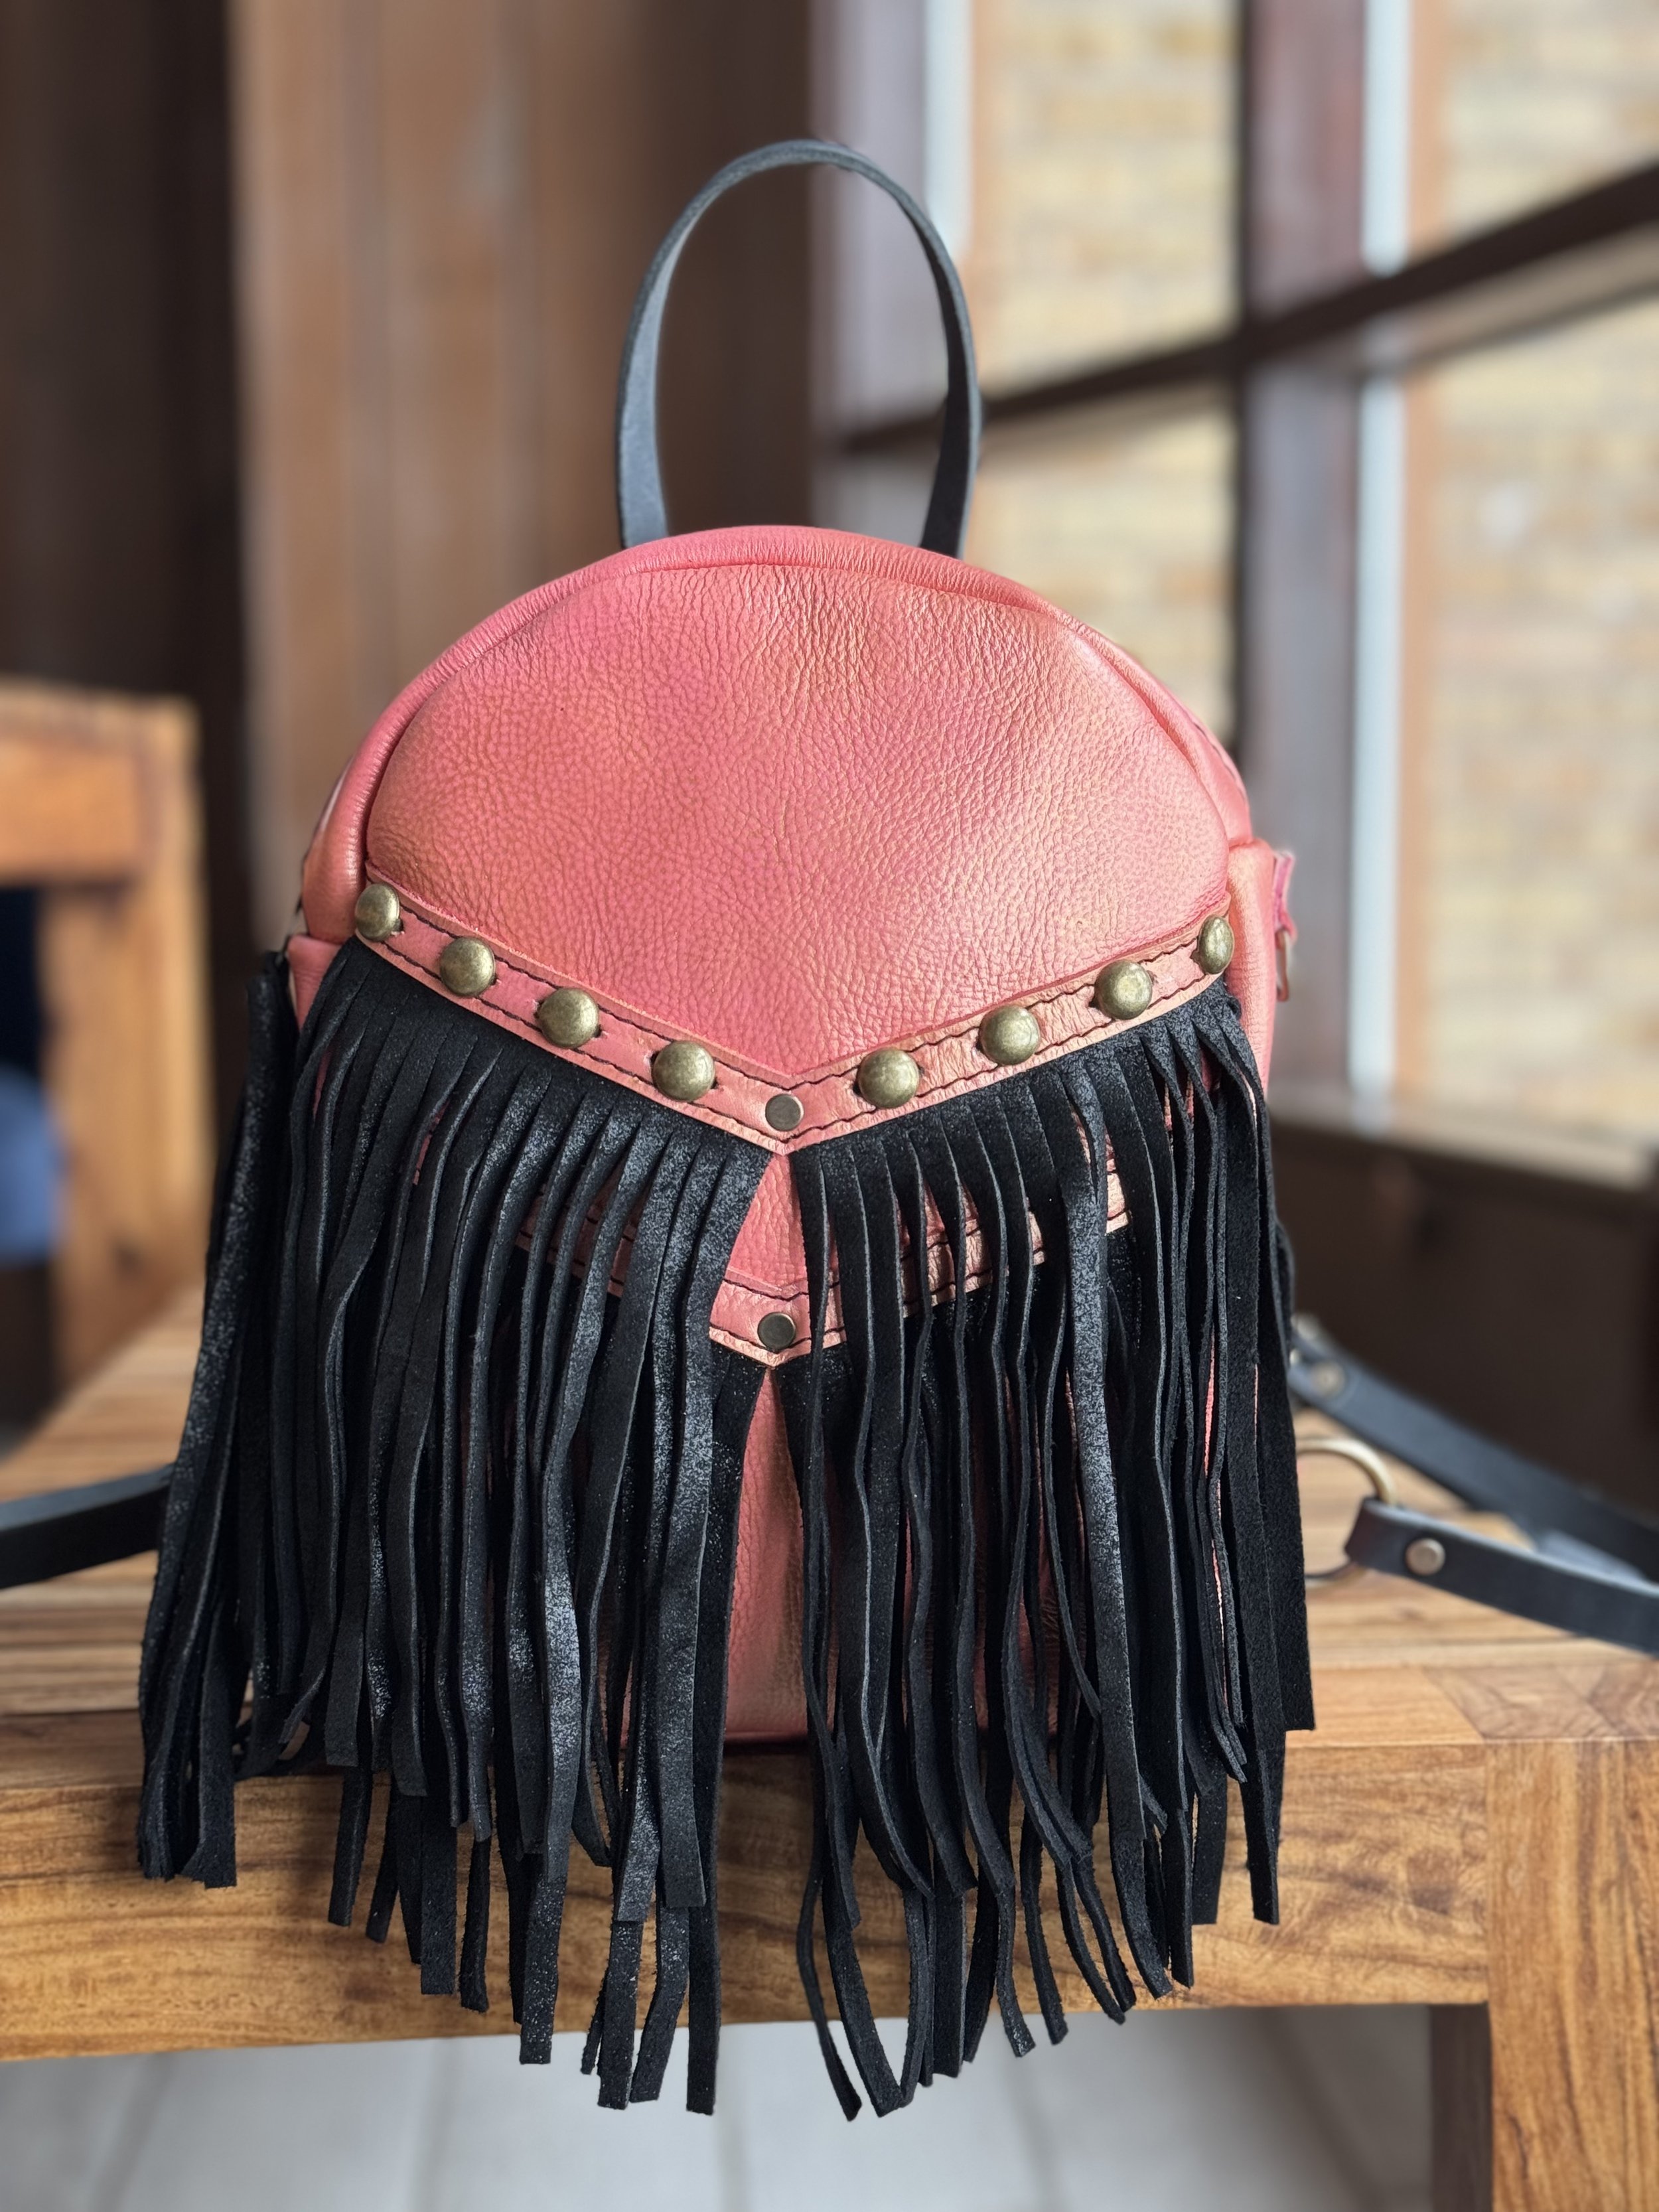 Lauren's Design Your Own Mini Backpack